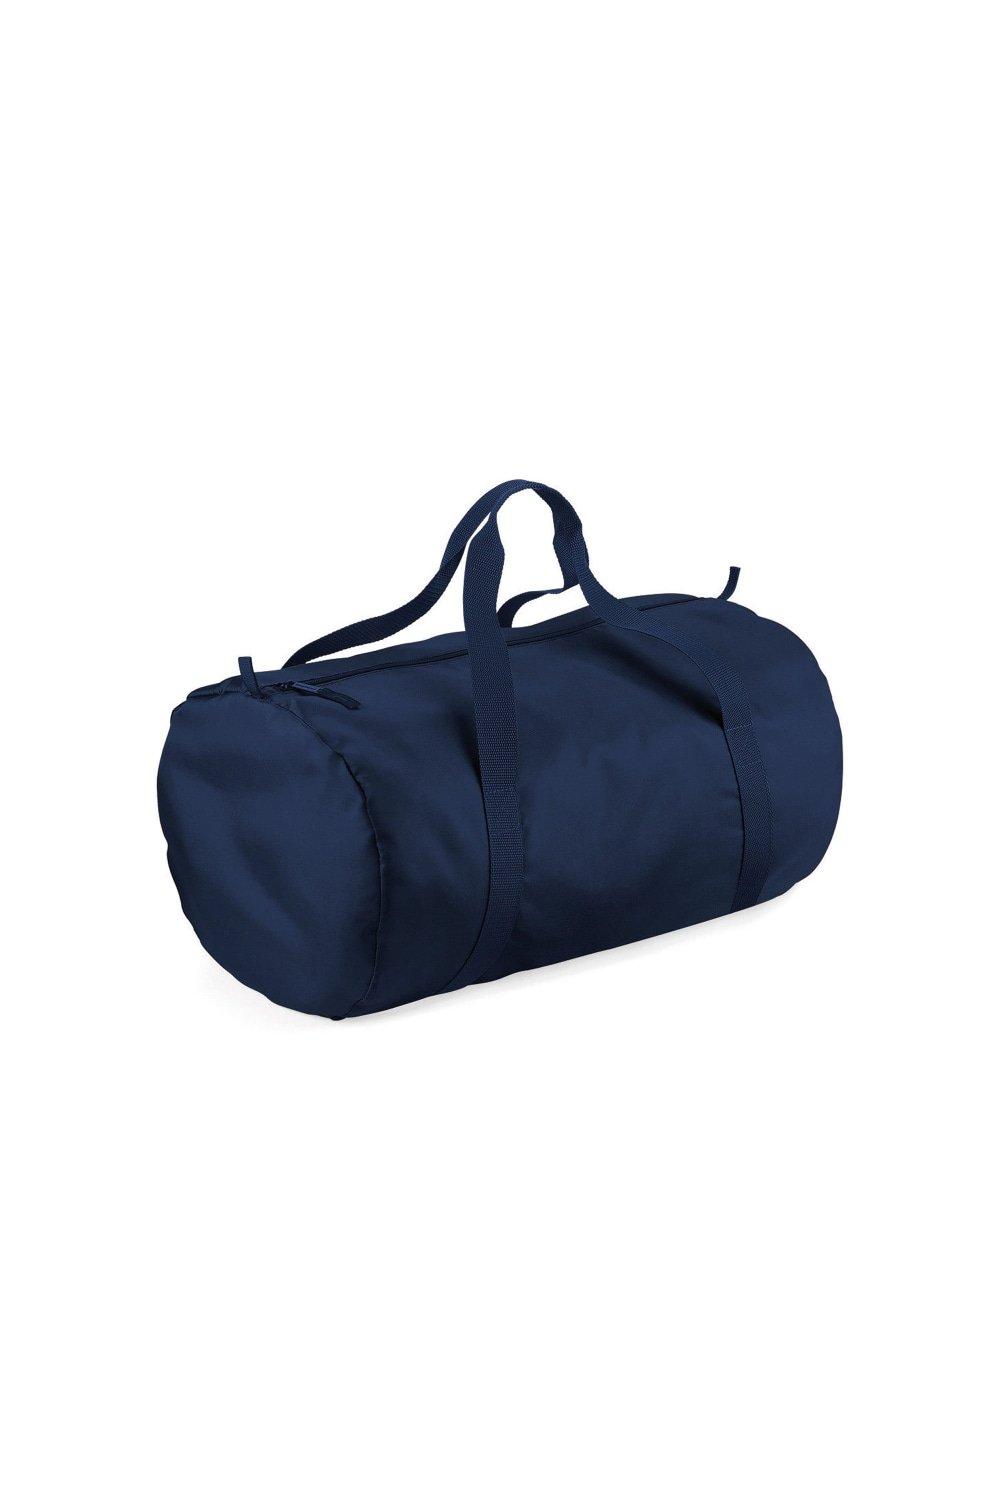 Спортивная сумка Barrel Packaway Bagbase, темно-синий